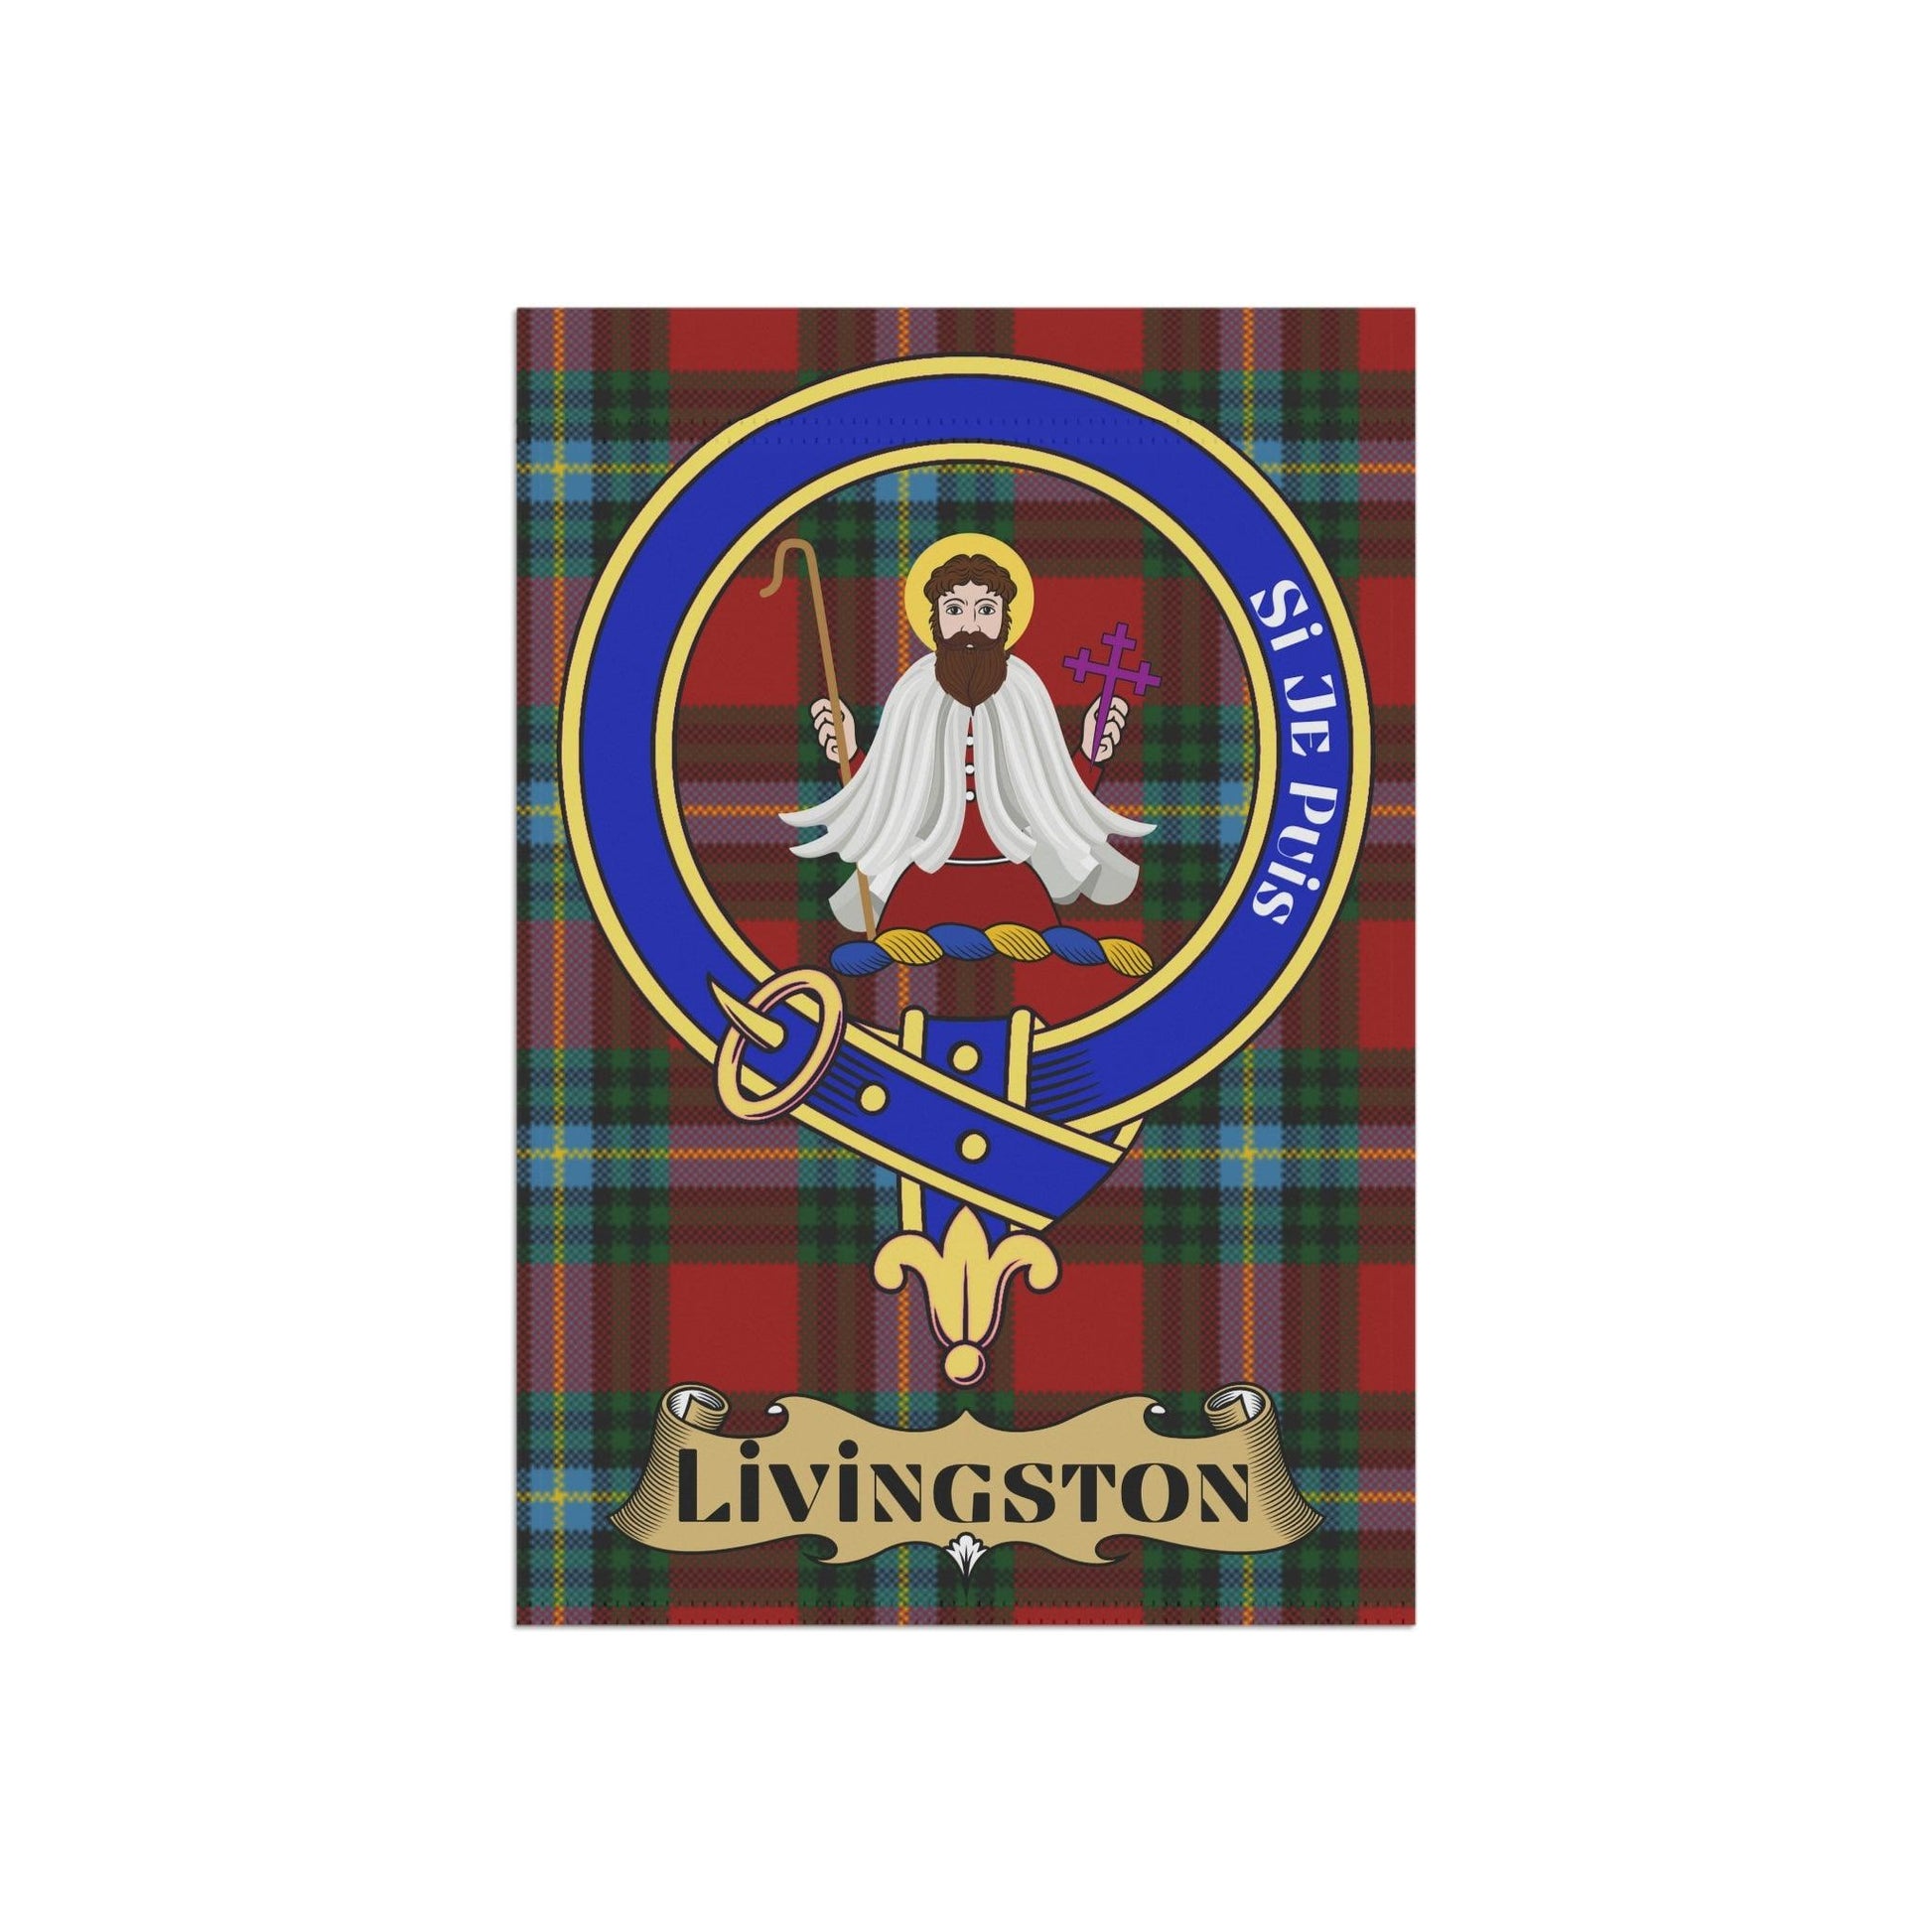 Livingston Clan Scottish Tartan Garden Banner, Livingston Family Crest Scotland Flag